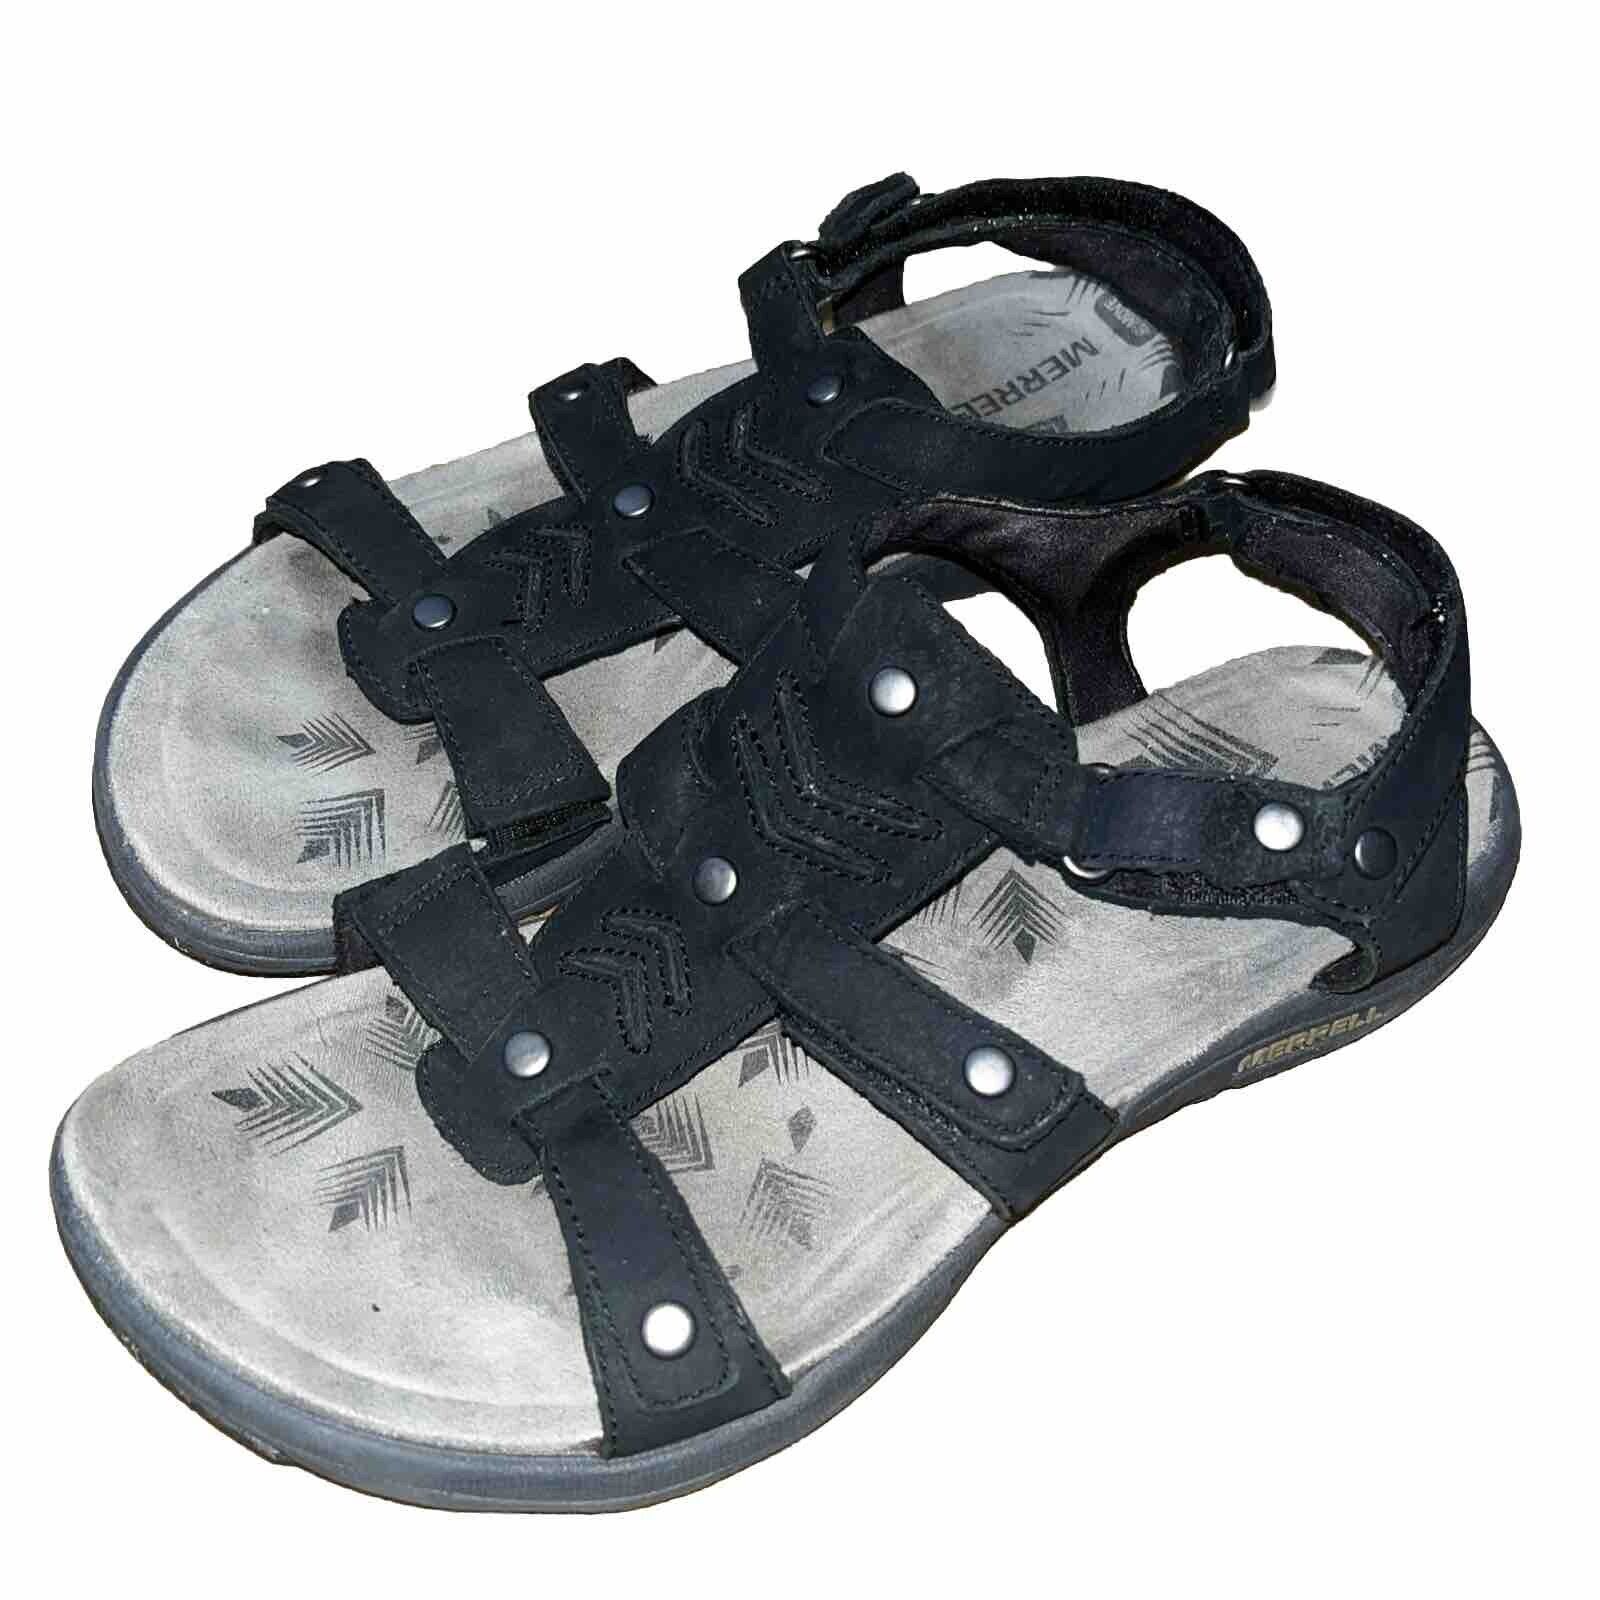 Merrell Sandals Women 8 Non Slip Select Grip Slin… - image 1